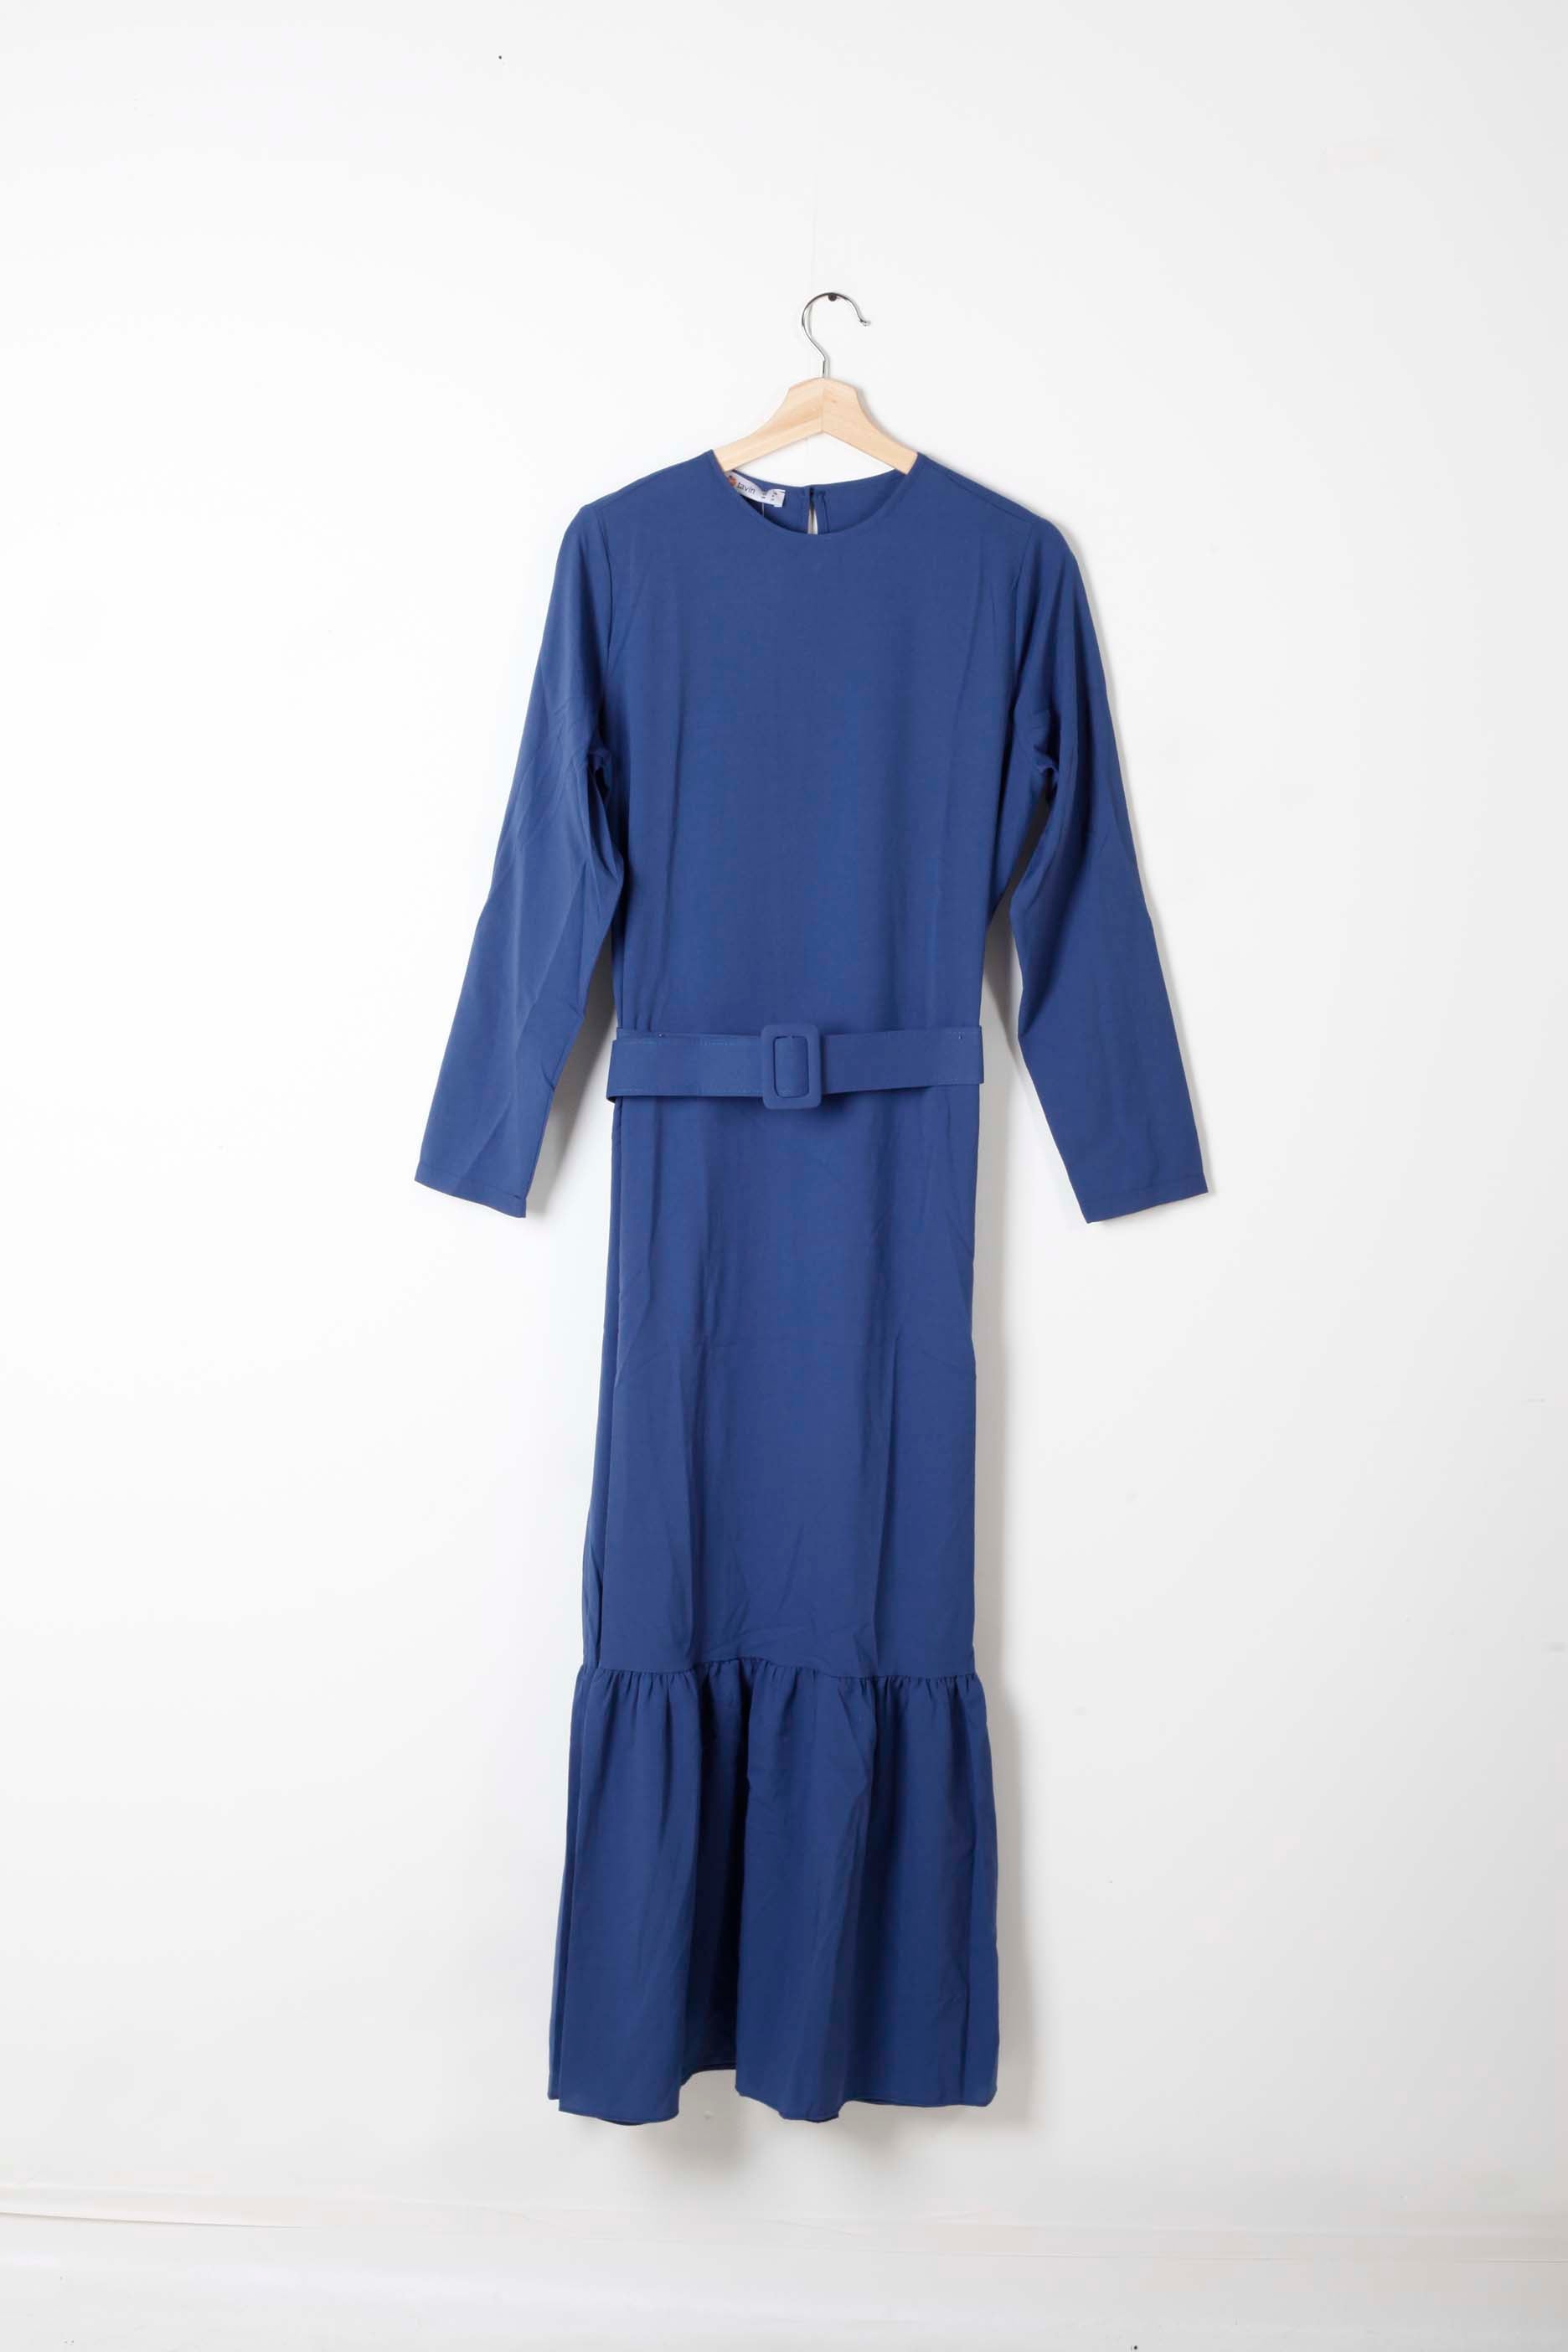 Blue Modest Dress